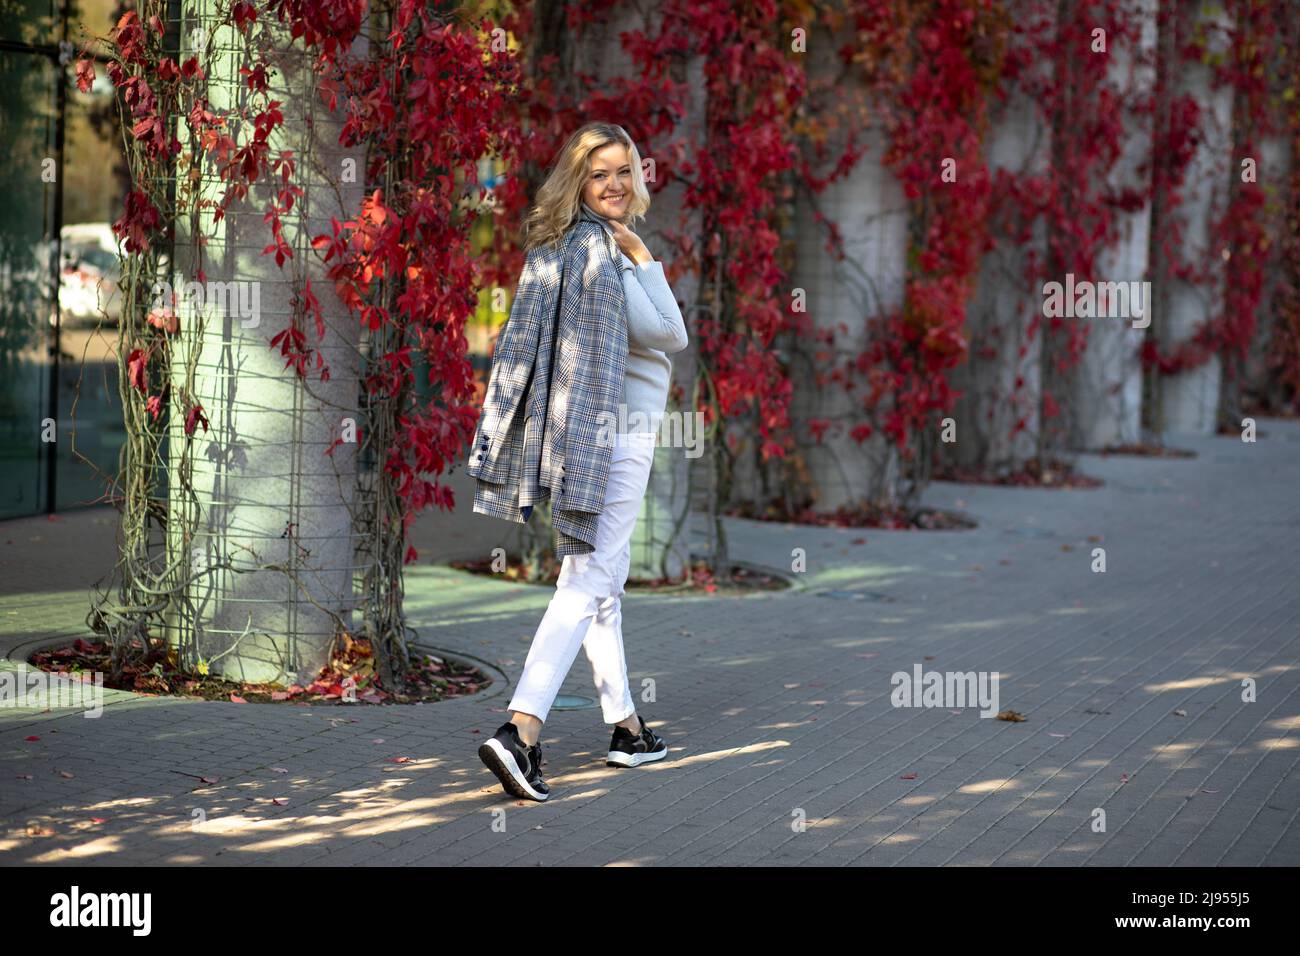 Attraente bionda 35-40 anni guarda intorno a piedi per la città autunno. È illuminata dai raggi del sole ed è felice di godersi una bella giornata Foto Stock